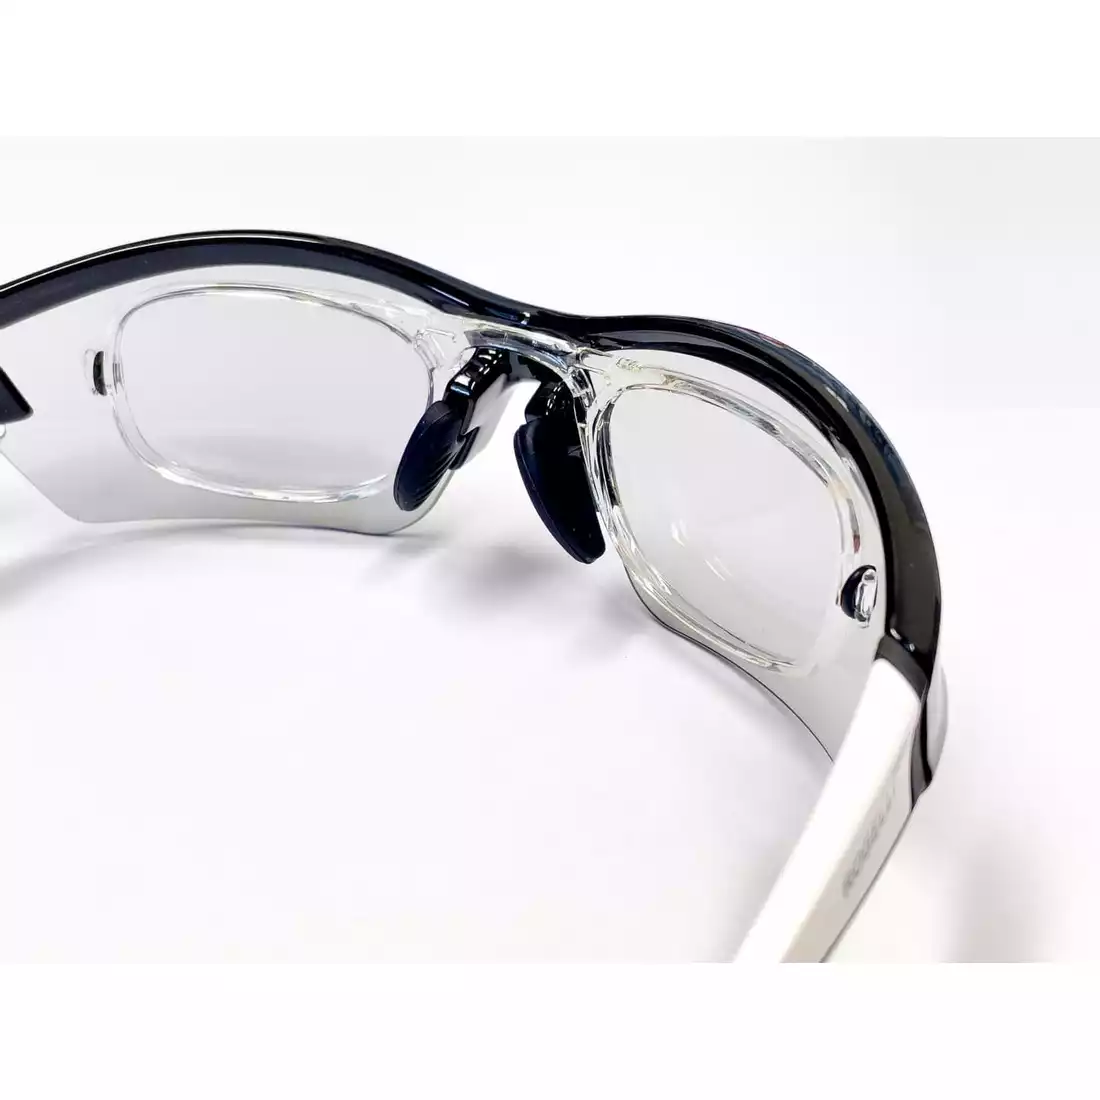 ROGELLI Oprawki do okularów optycznych Shadow i Skyhawk Optic, przeźroczyste